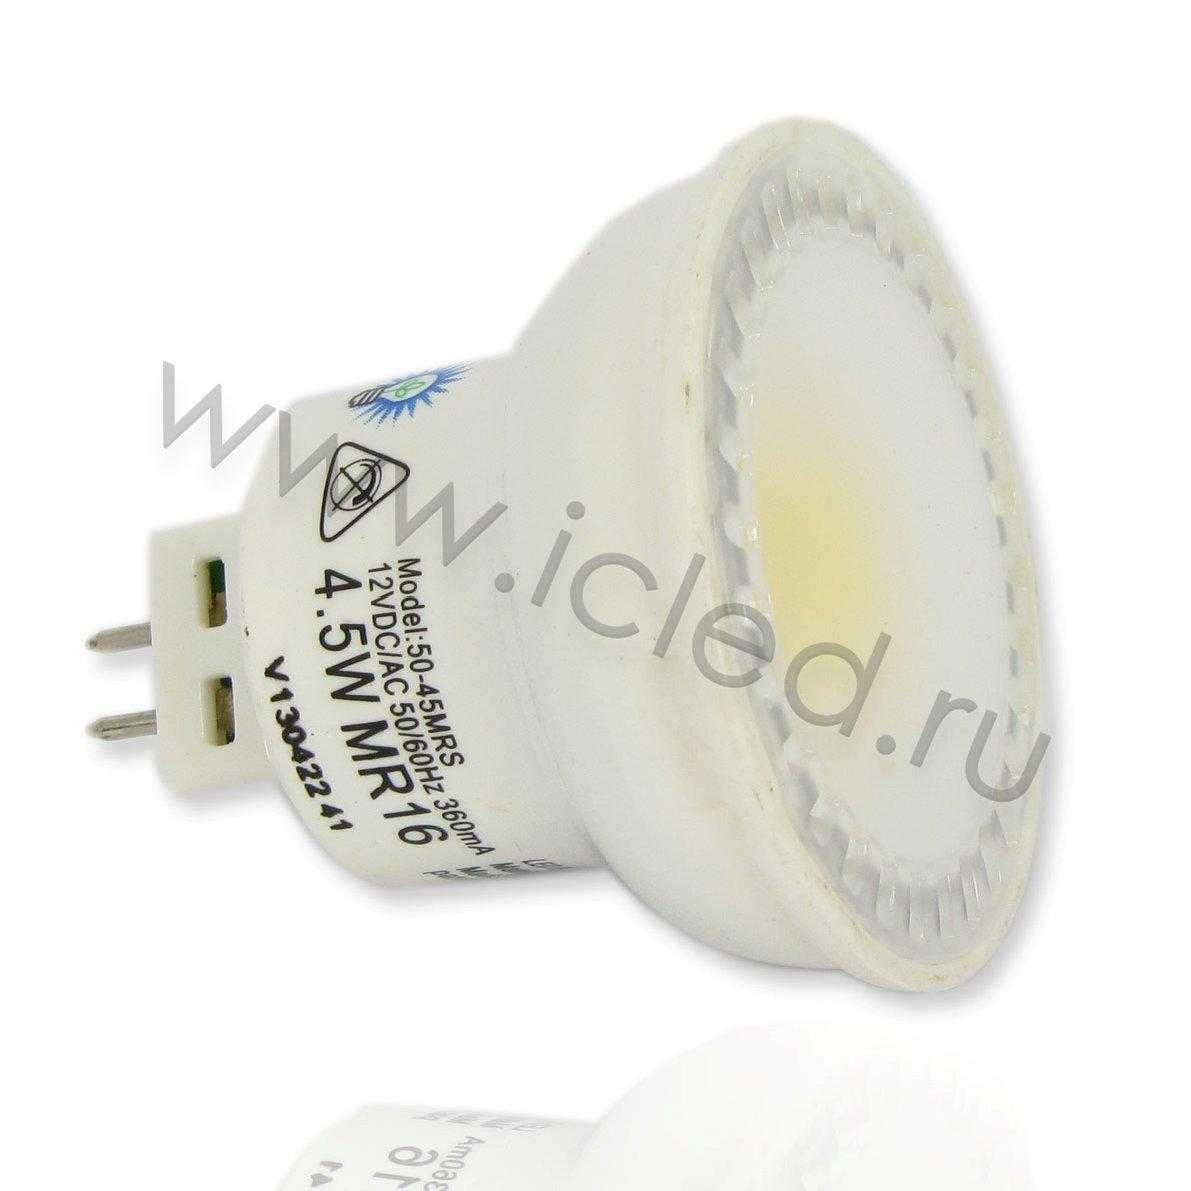 Светодиодная лампа MT-PAR16-MR16 (4,5W, 12V, Dimm Warm White)